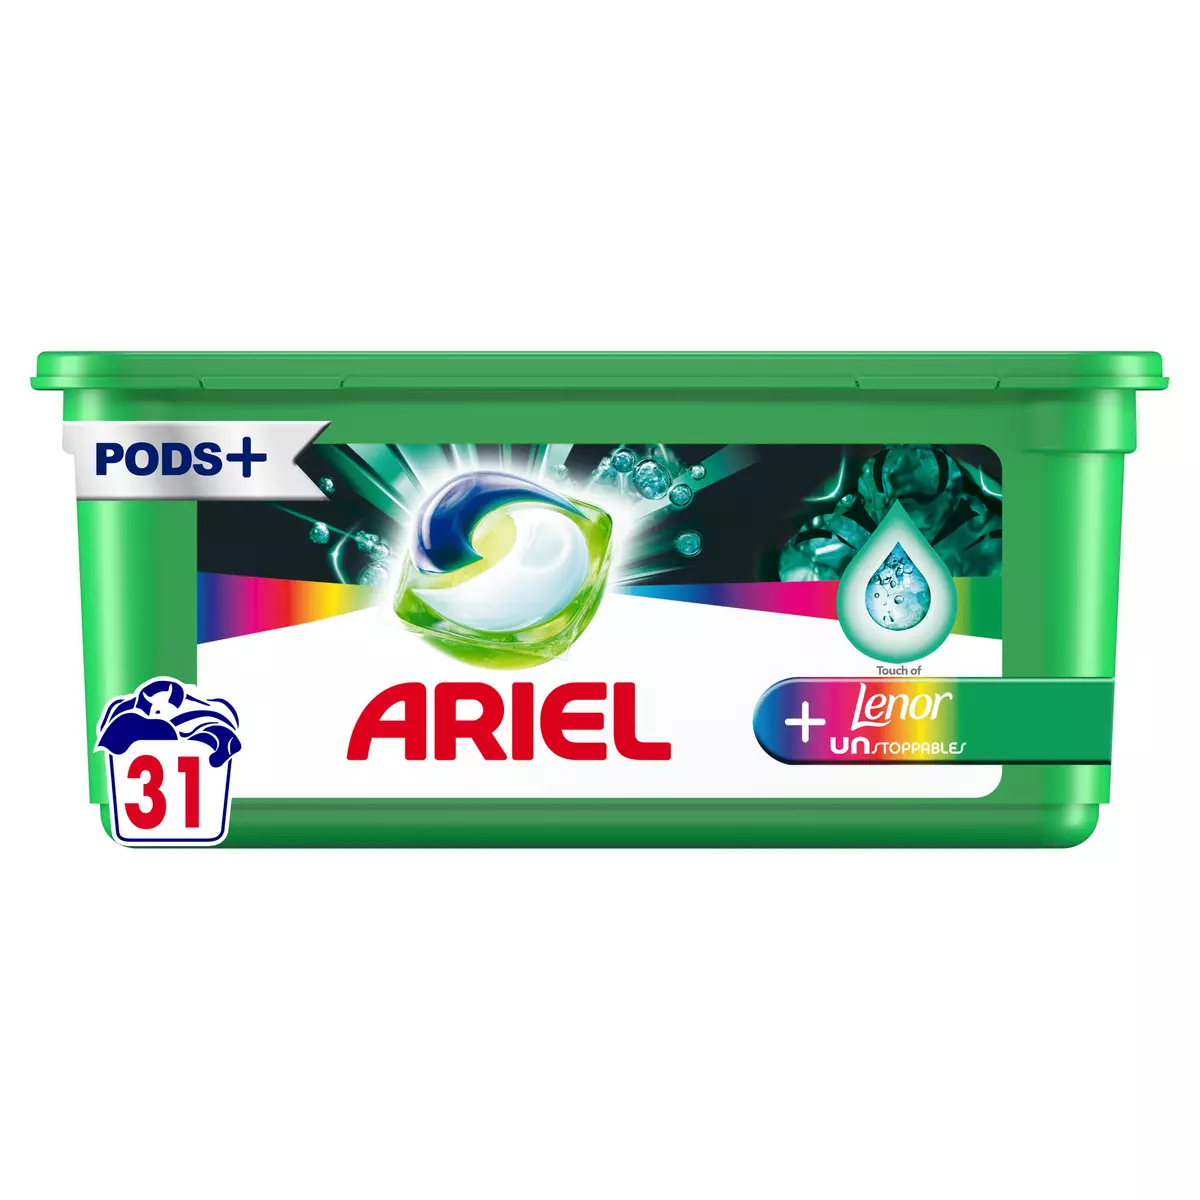 ARIEL Pods lessive capsules touche de Lenor 24 lavages 24 capsules pas cher  